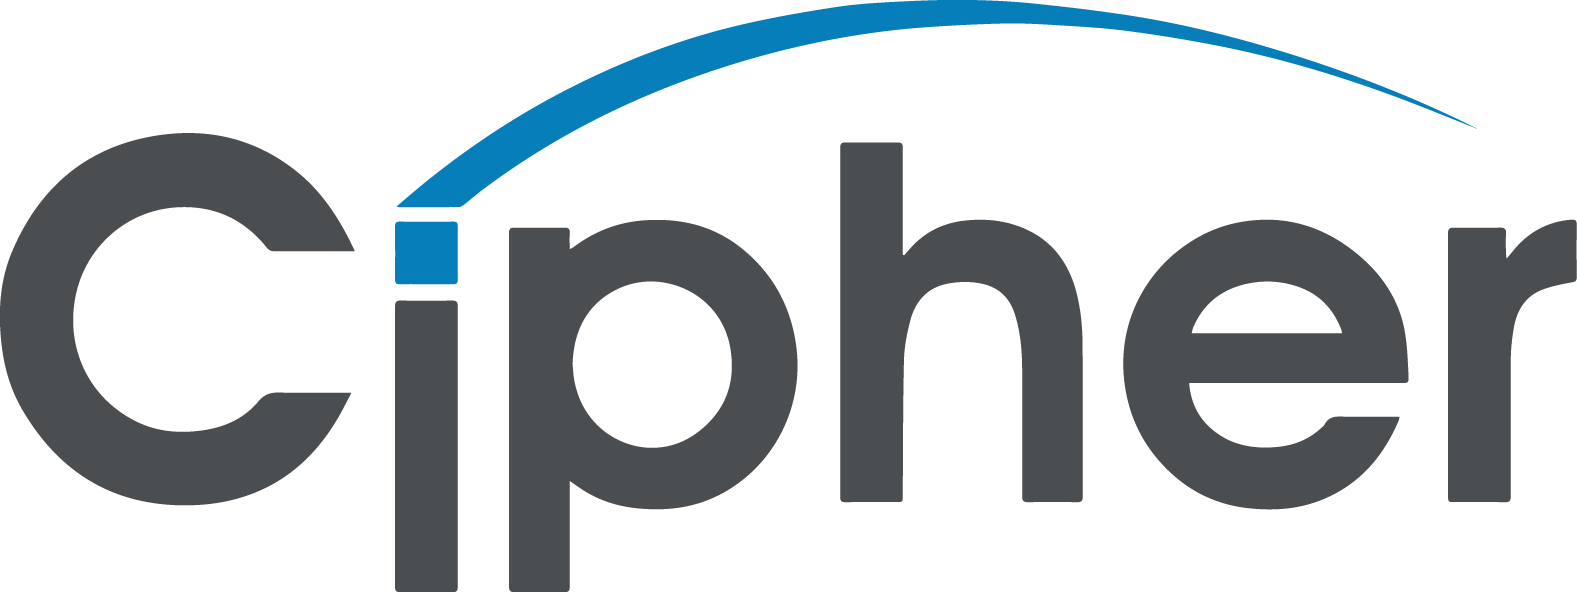 Cipher Systems, LLC logo